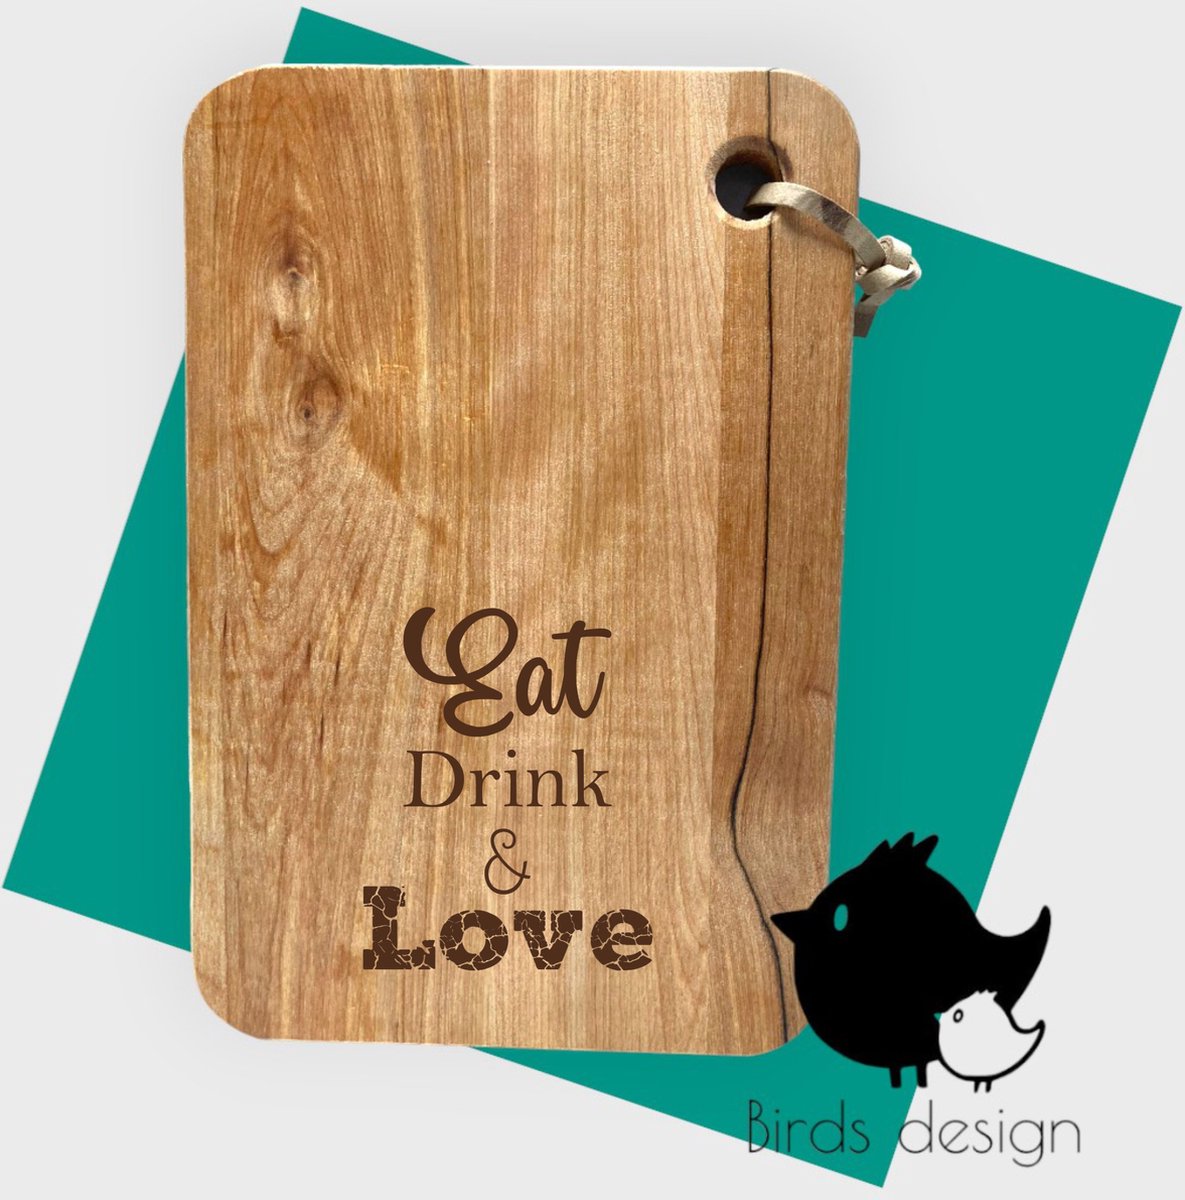 Birds design - Tapasplank - Eat drink & Love- kado - borrelen - Tapas